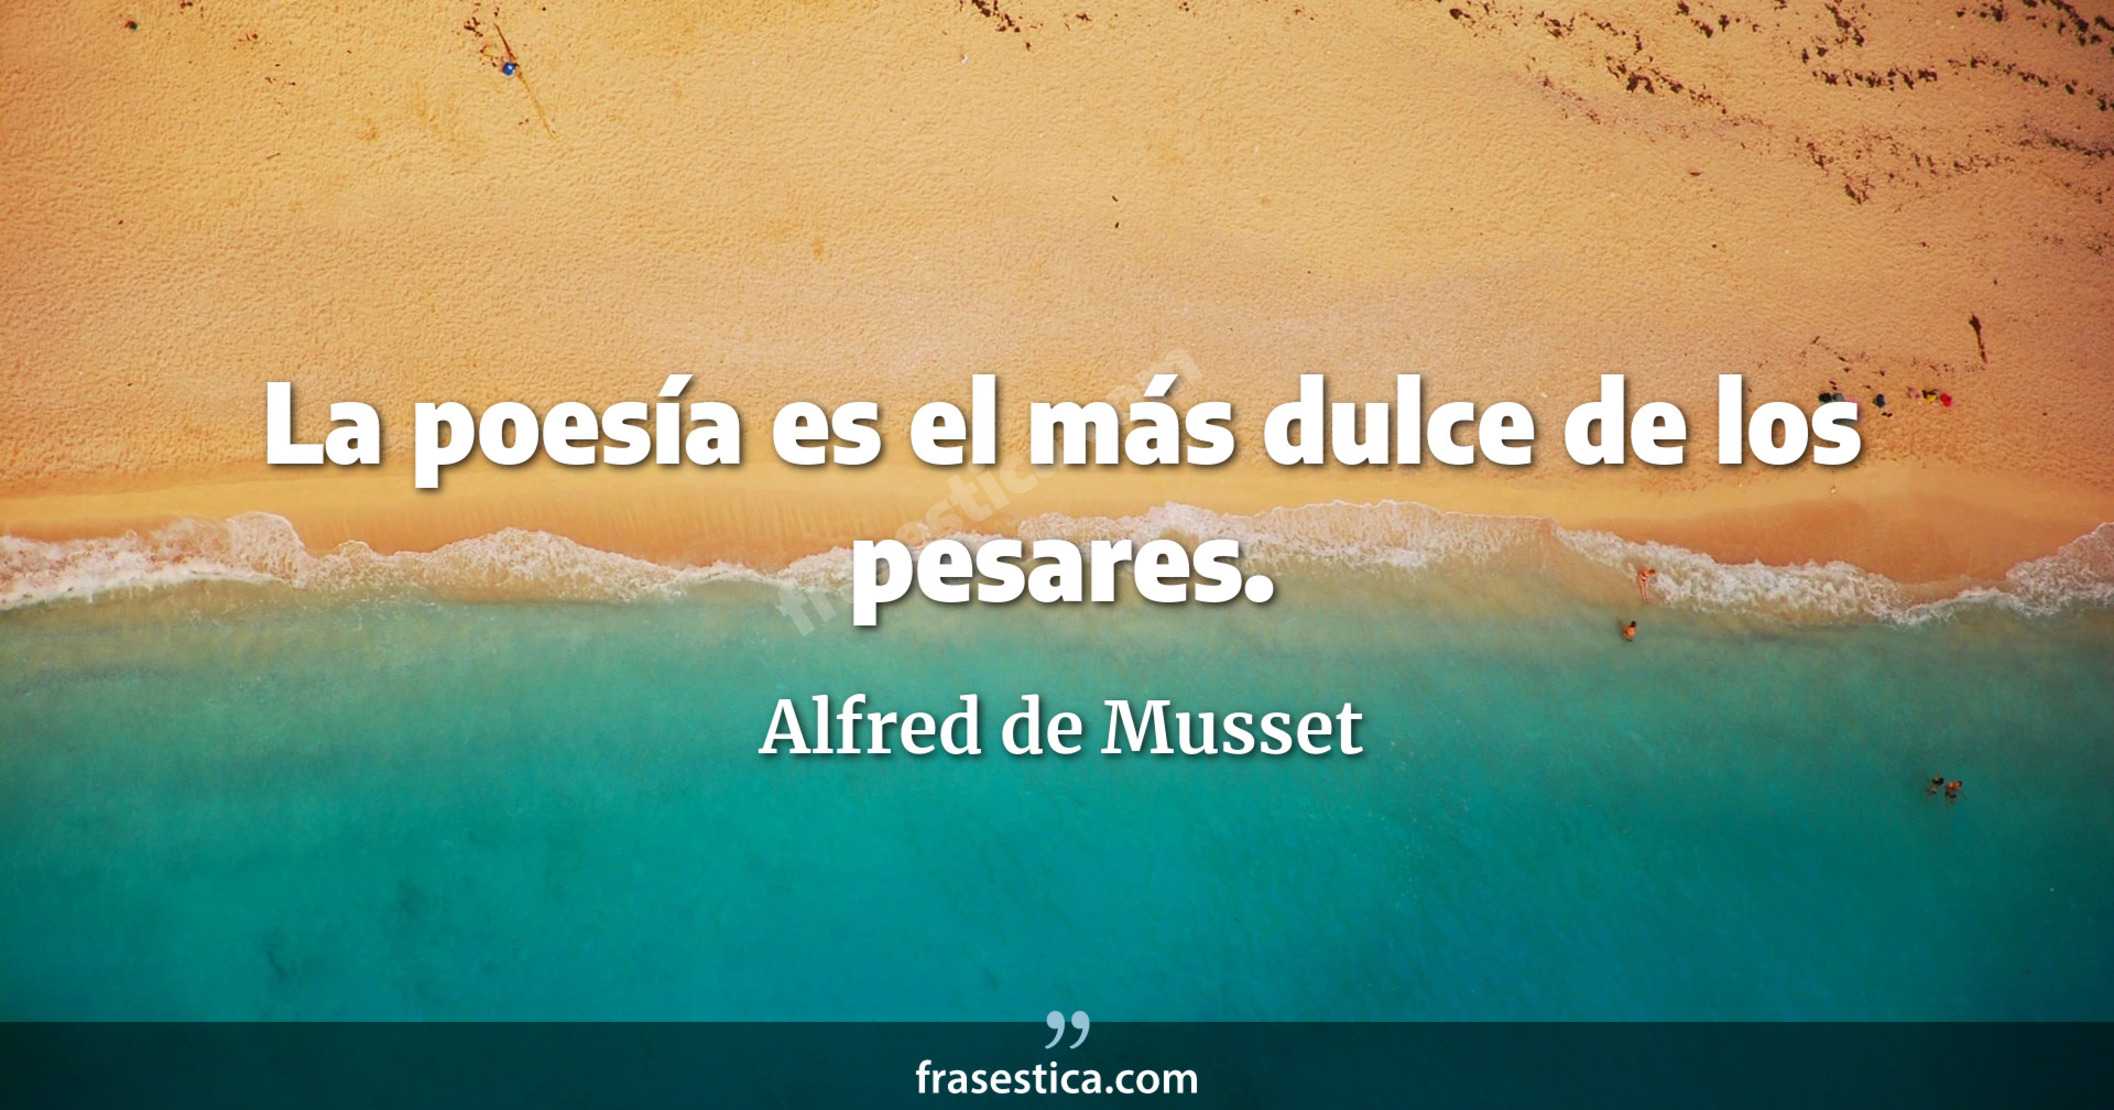 La poesía es el más dulce de los pesares. - Alfred de Musset